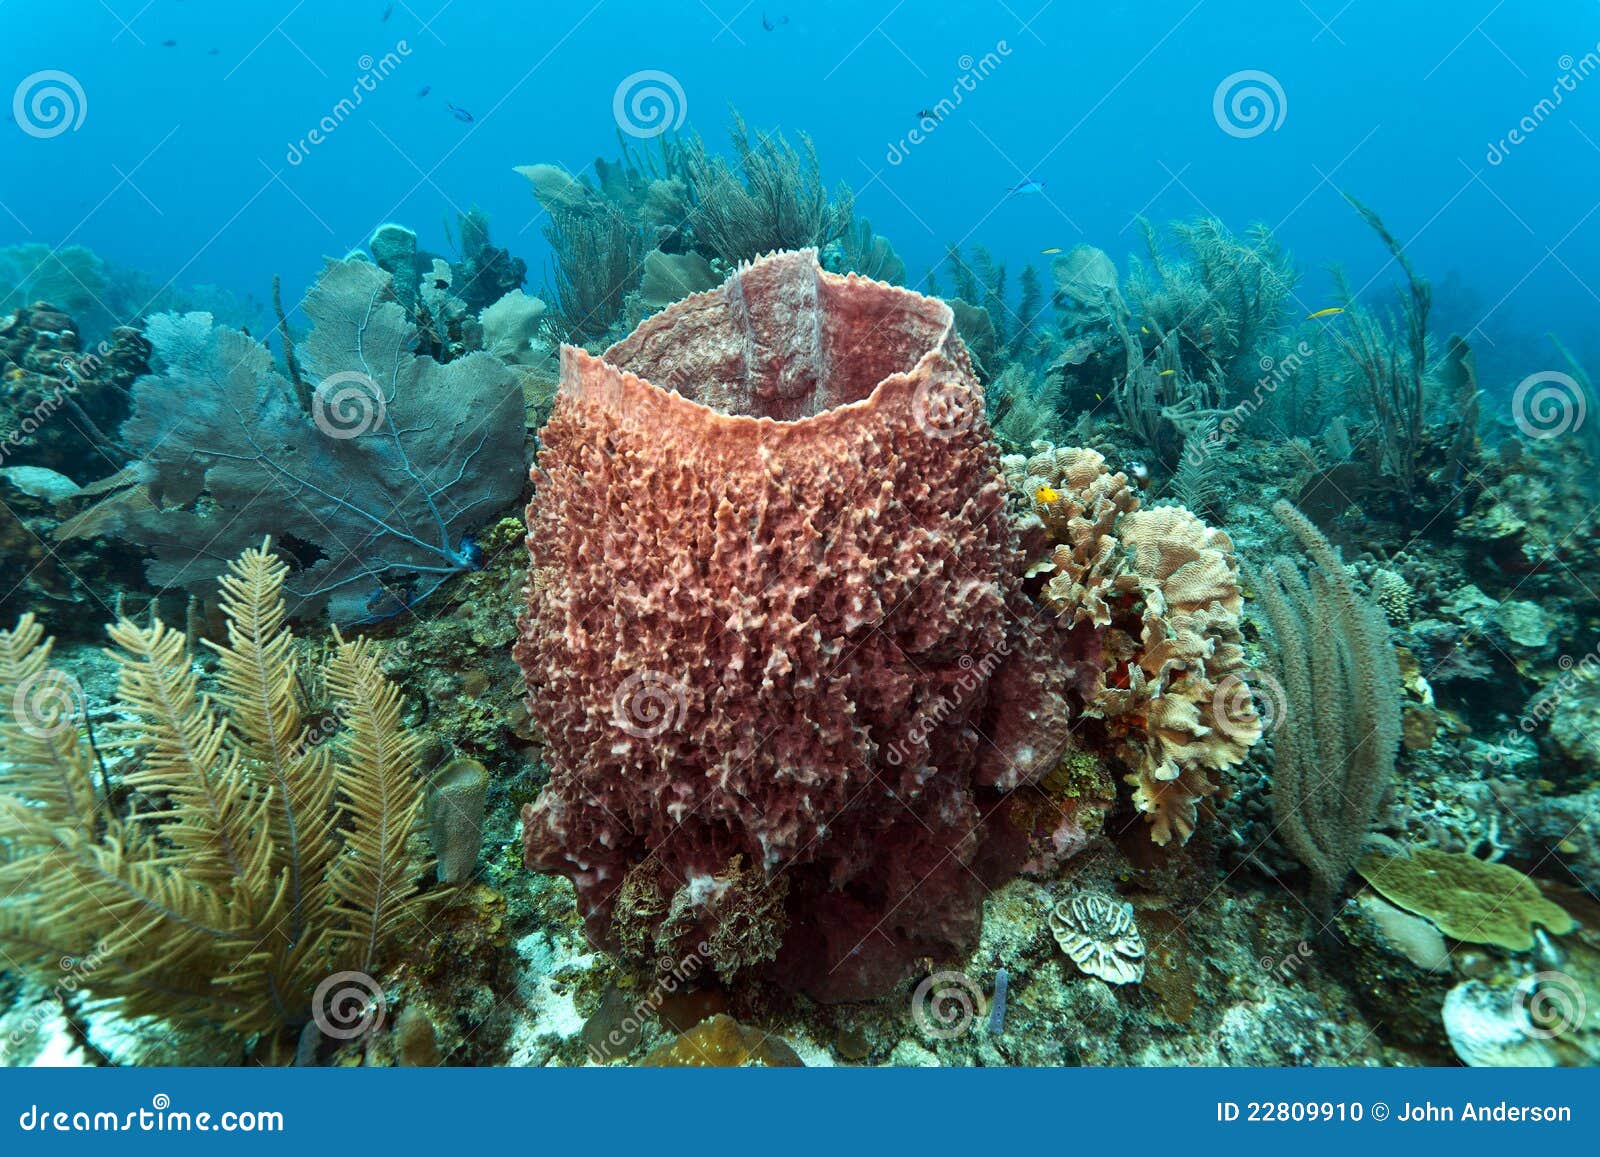 giant barrel sponge xestospongia muta